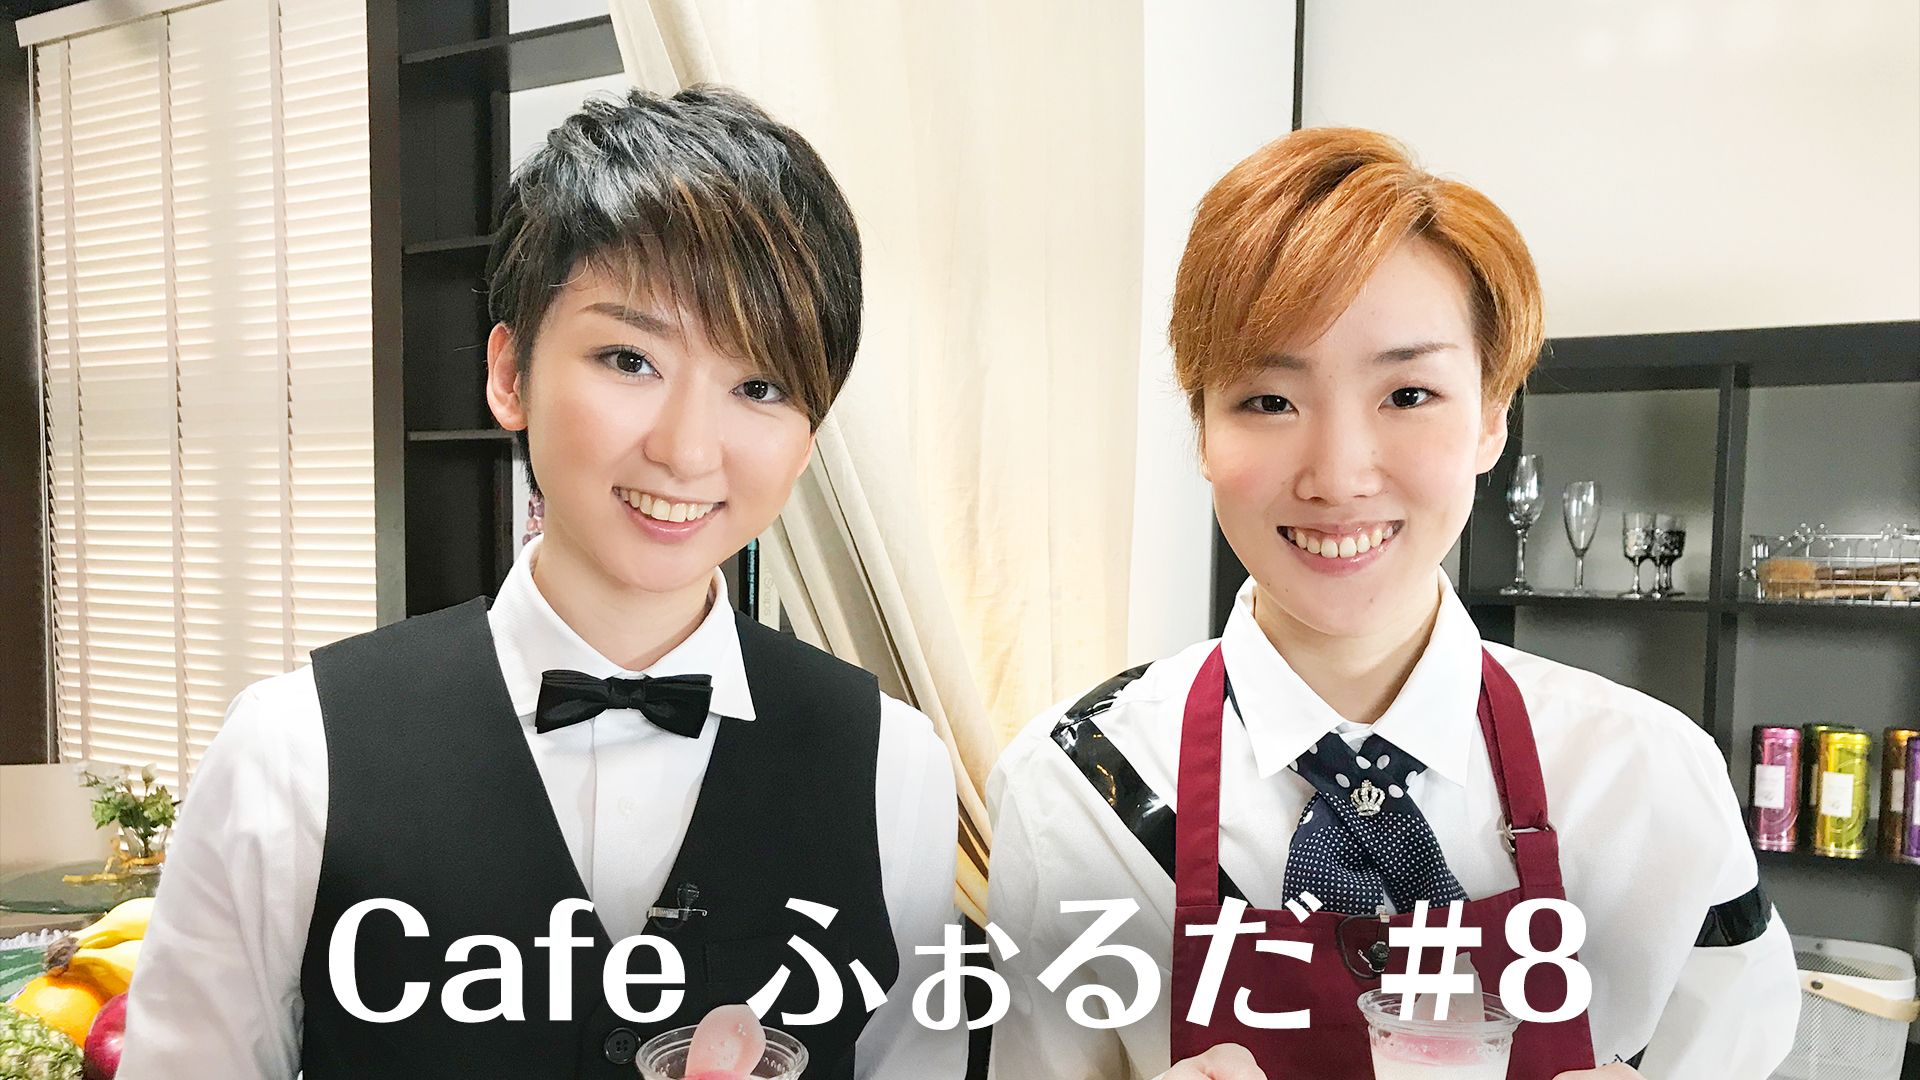 Cafe ふぉるだ #8